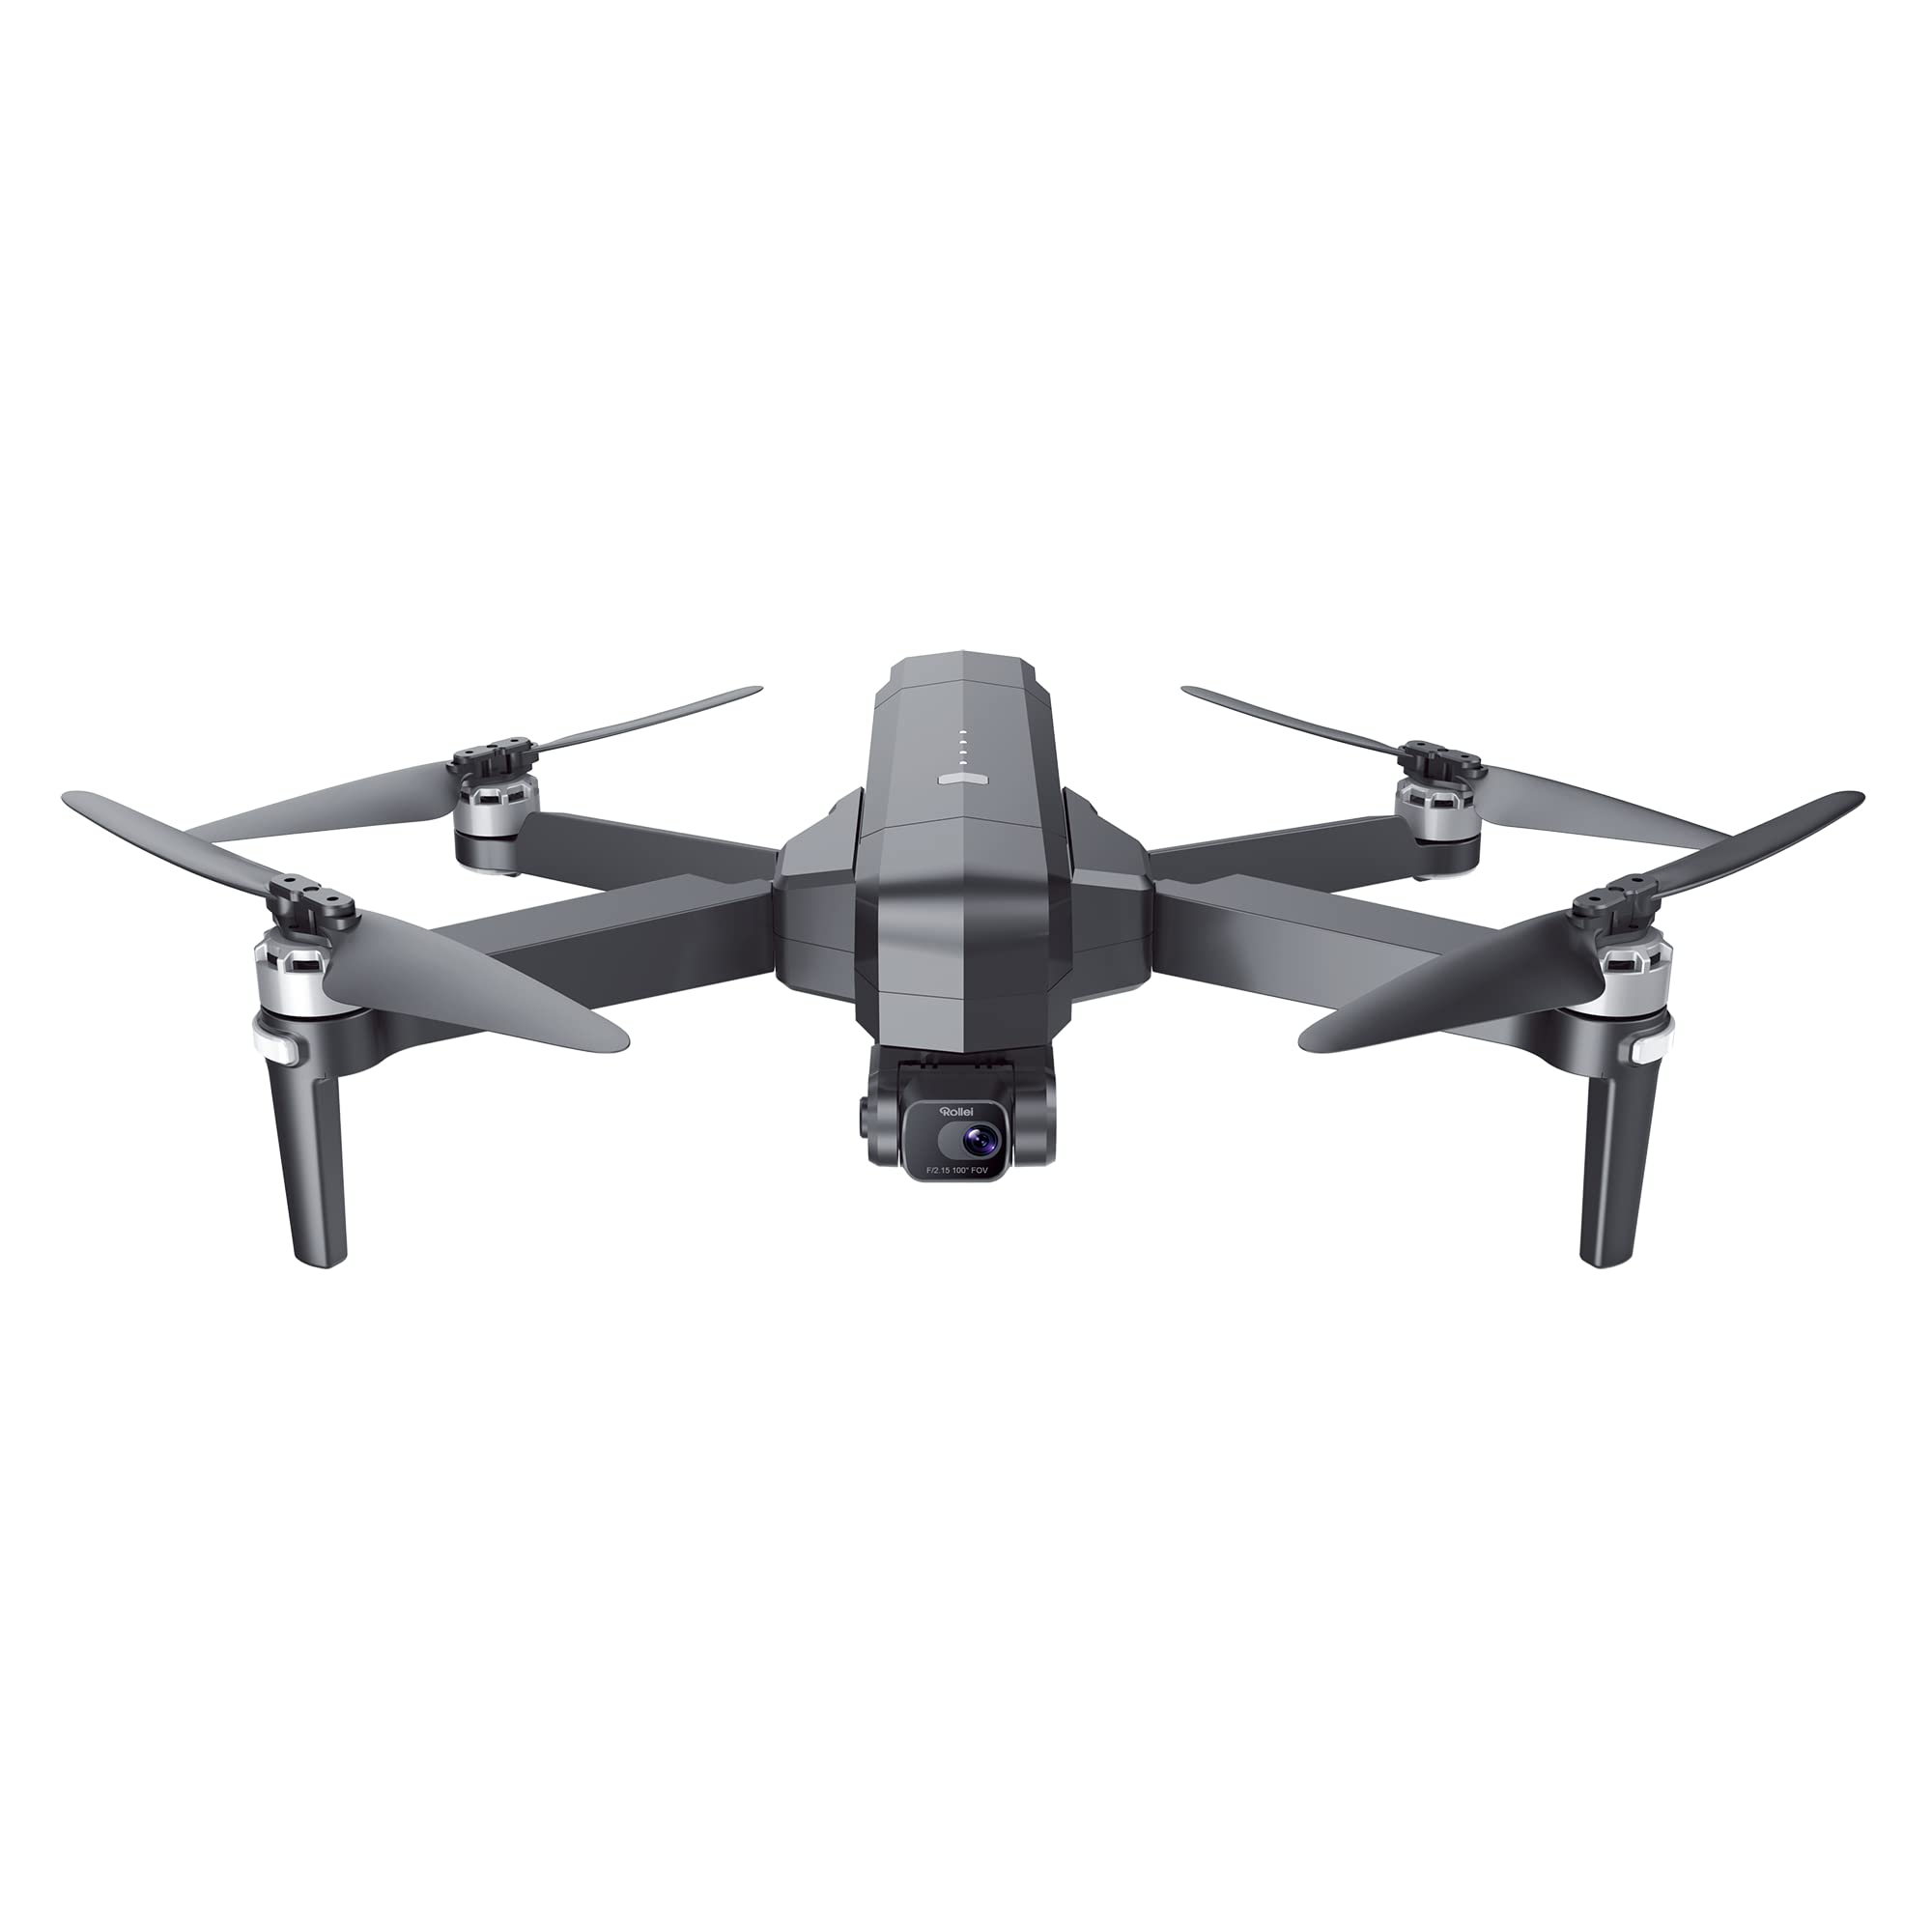 Maginon QC-120 GPS, Faltbare Drohne mit GPS und 4K Ultra HD Kamera mit elektronischem Bildstabilisator und 2-Achsen Gimbal zur Foto und Video Stabilisierung...